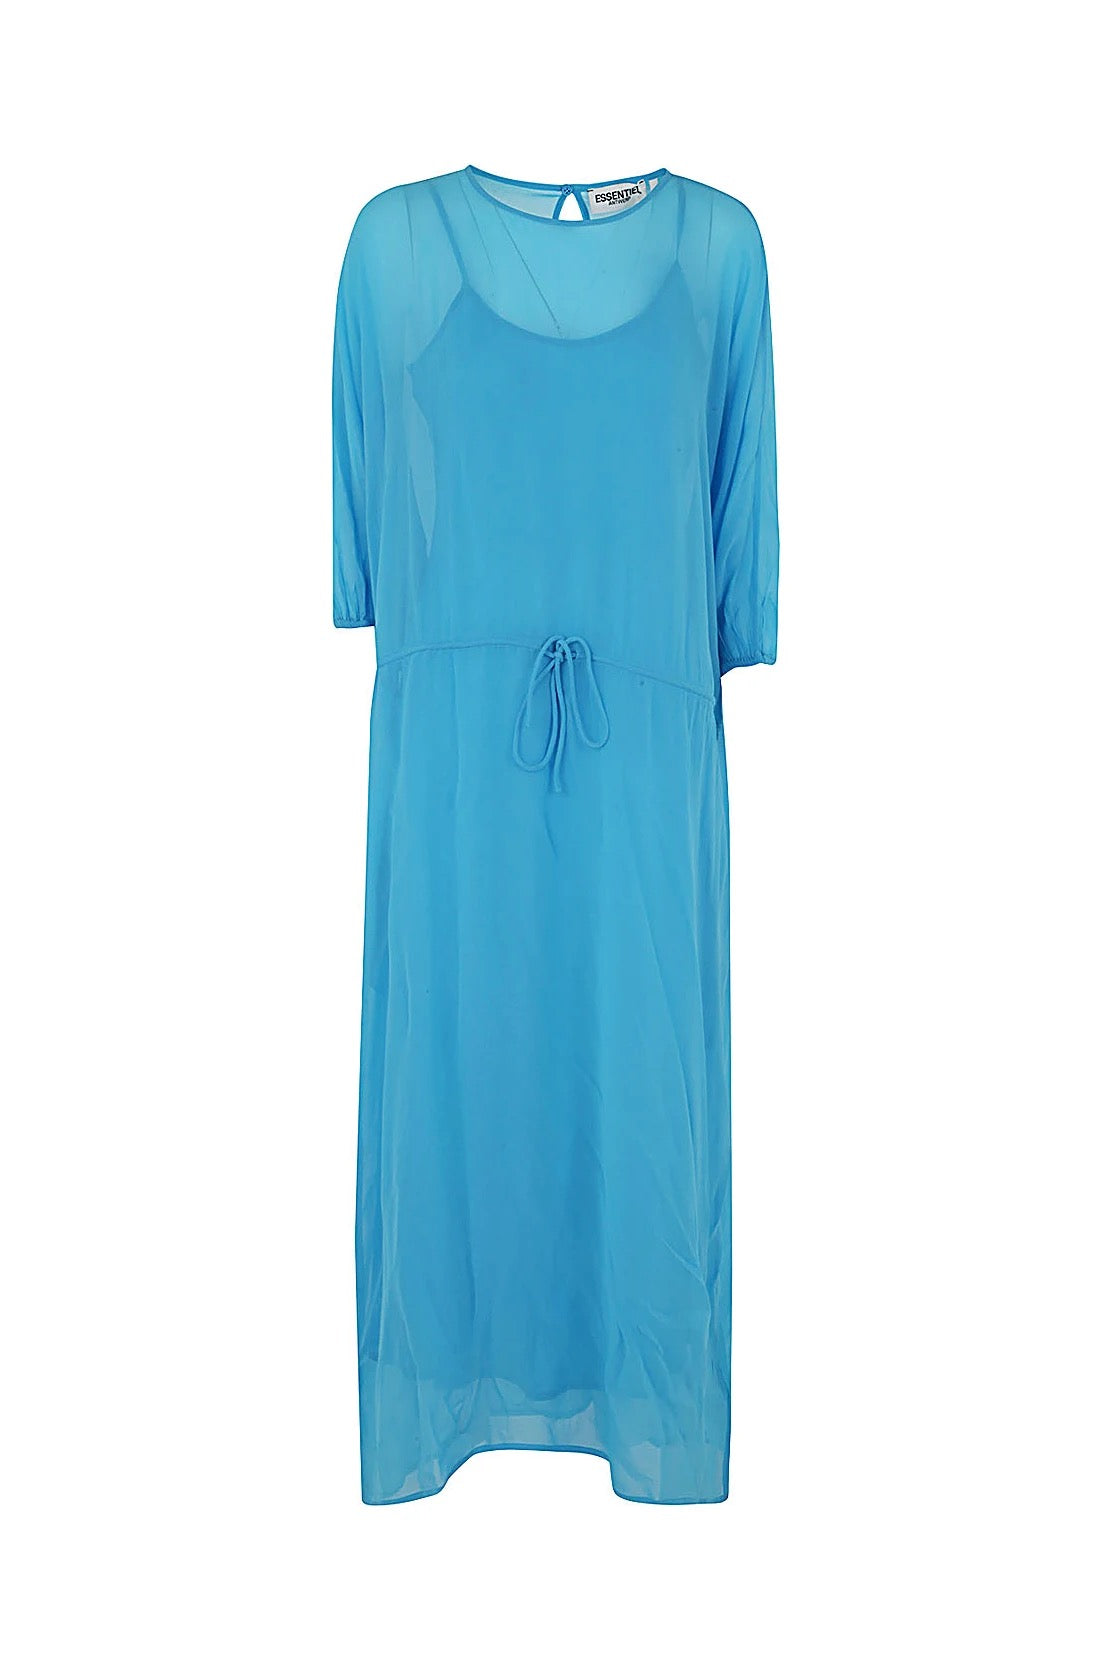 Essentiel Antwerp- Bilver Puff Sleeve Dress: Blue